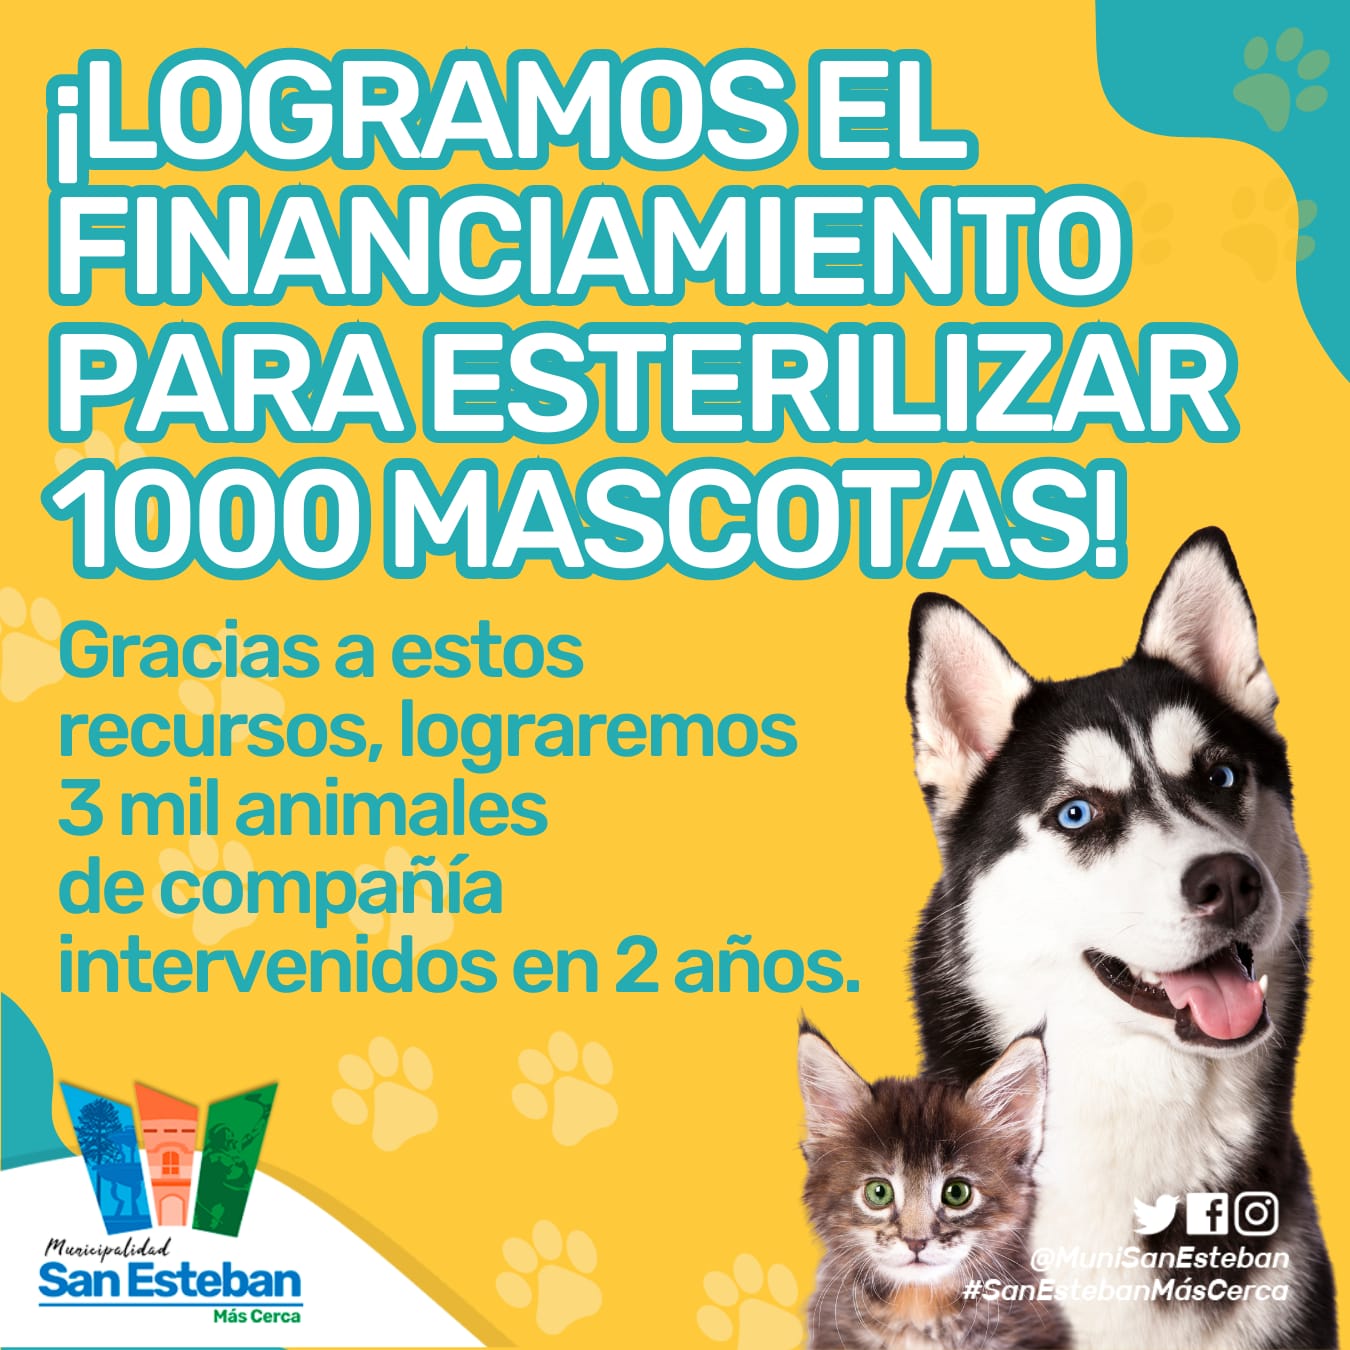 SAN ESTEBAN: Municipio de San Esteban obtuvo recursos para realizar mil esterilizaciones y llegarán a las 3 mil mascotas intervenidas en 2 años